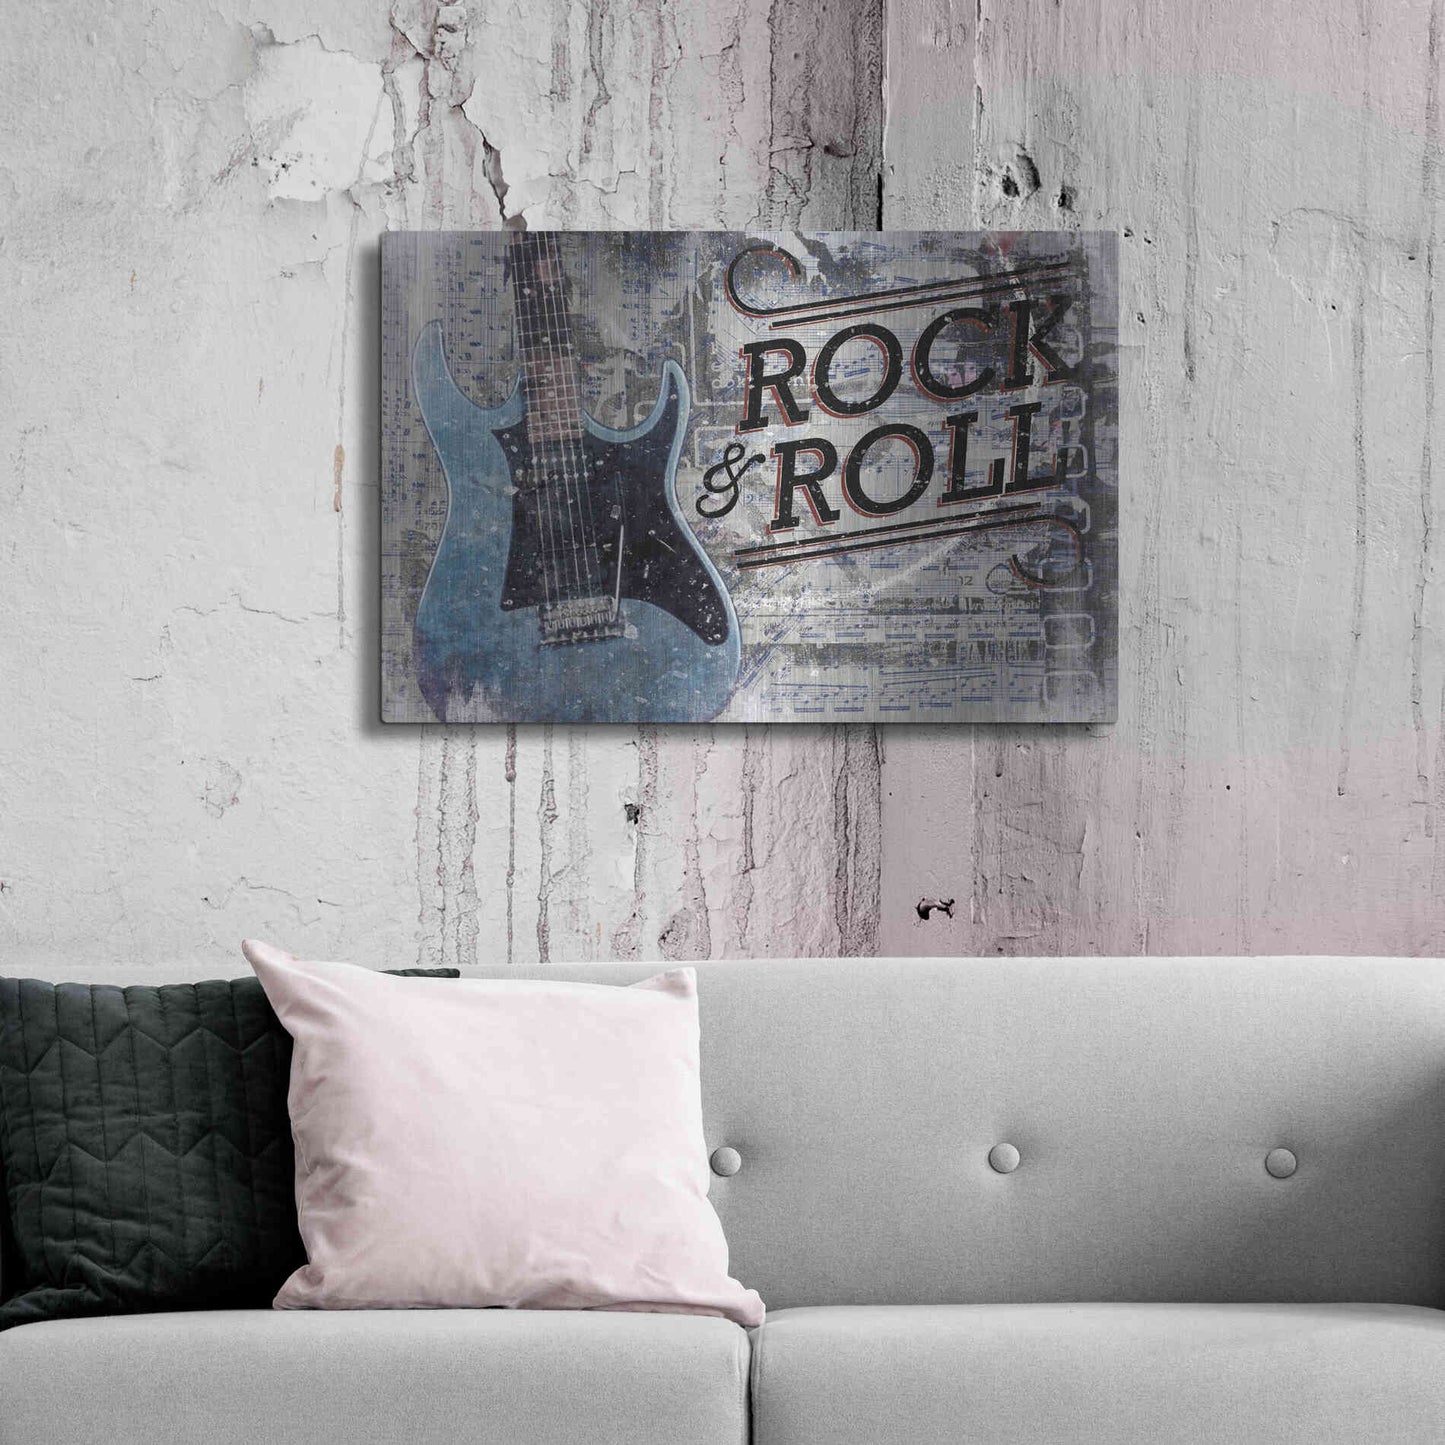 Luxe Metal Art 'Rock & Roll Guitar' by Cloverfield & Co, Metal Wall Art,36x24